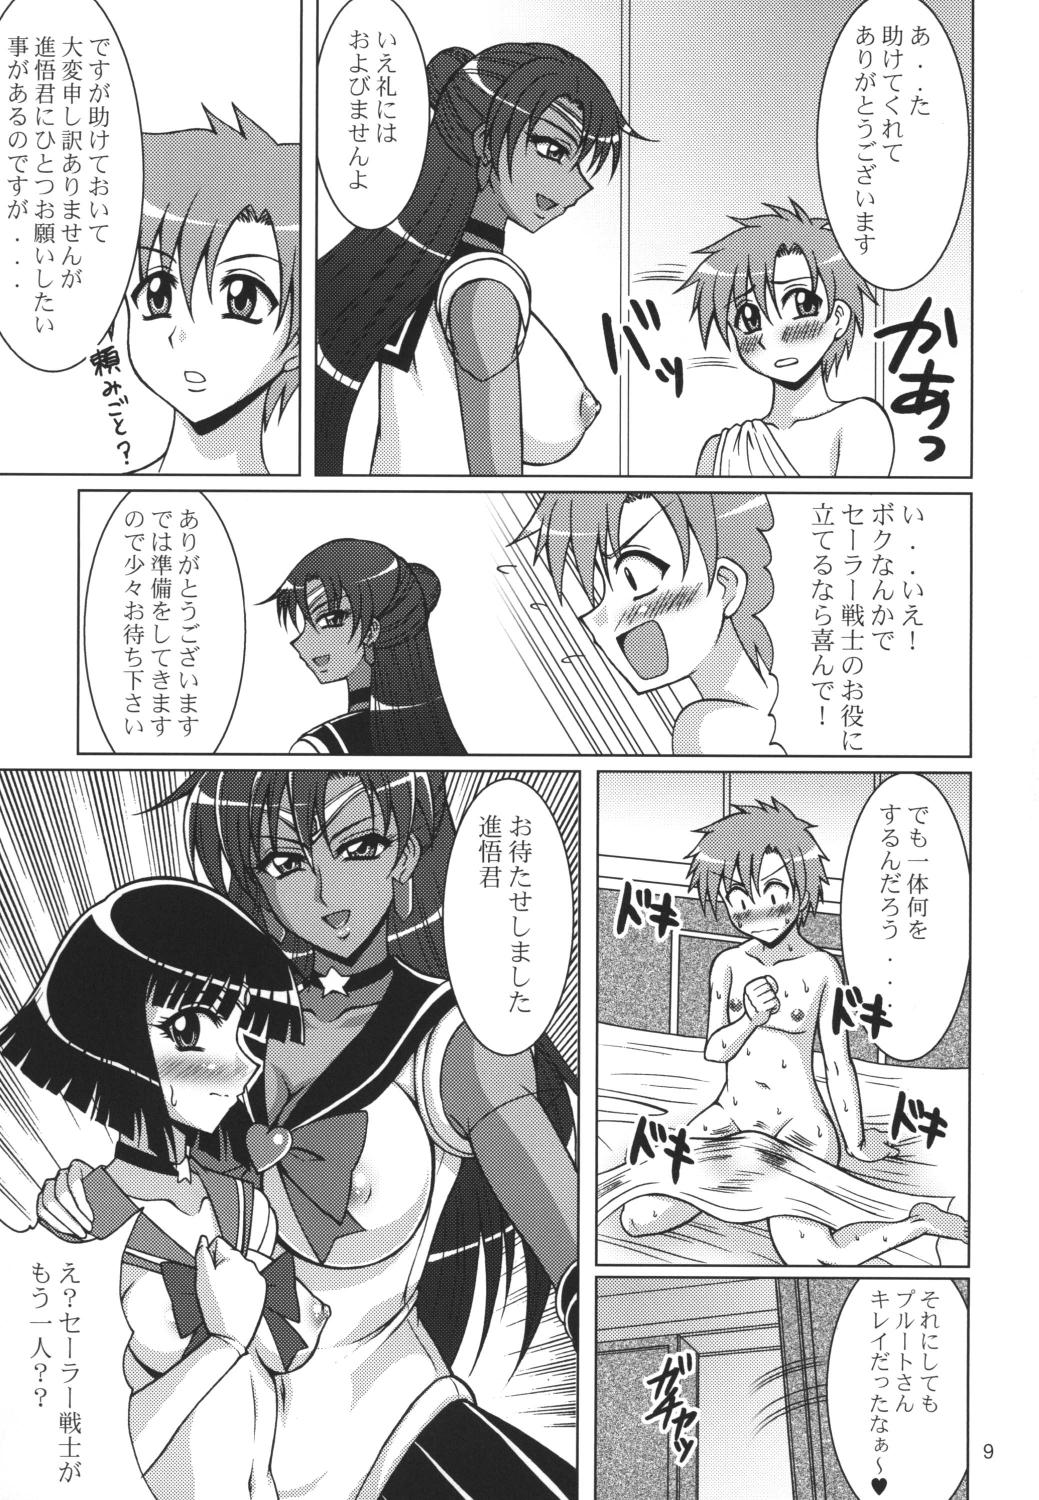 Caiu Na Net Rojou no Meiousei - Sailor moon Ass - Page 8